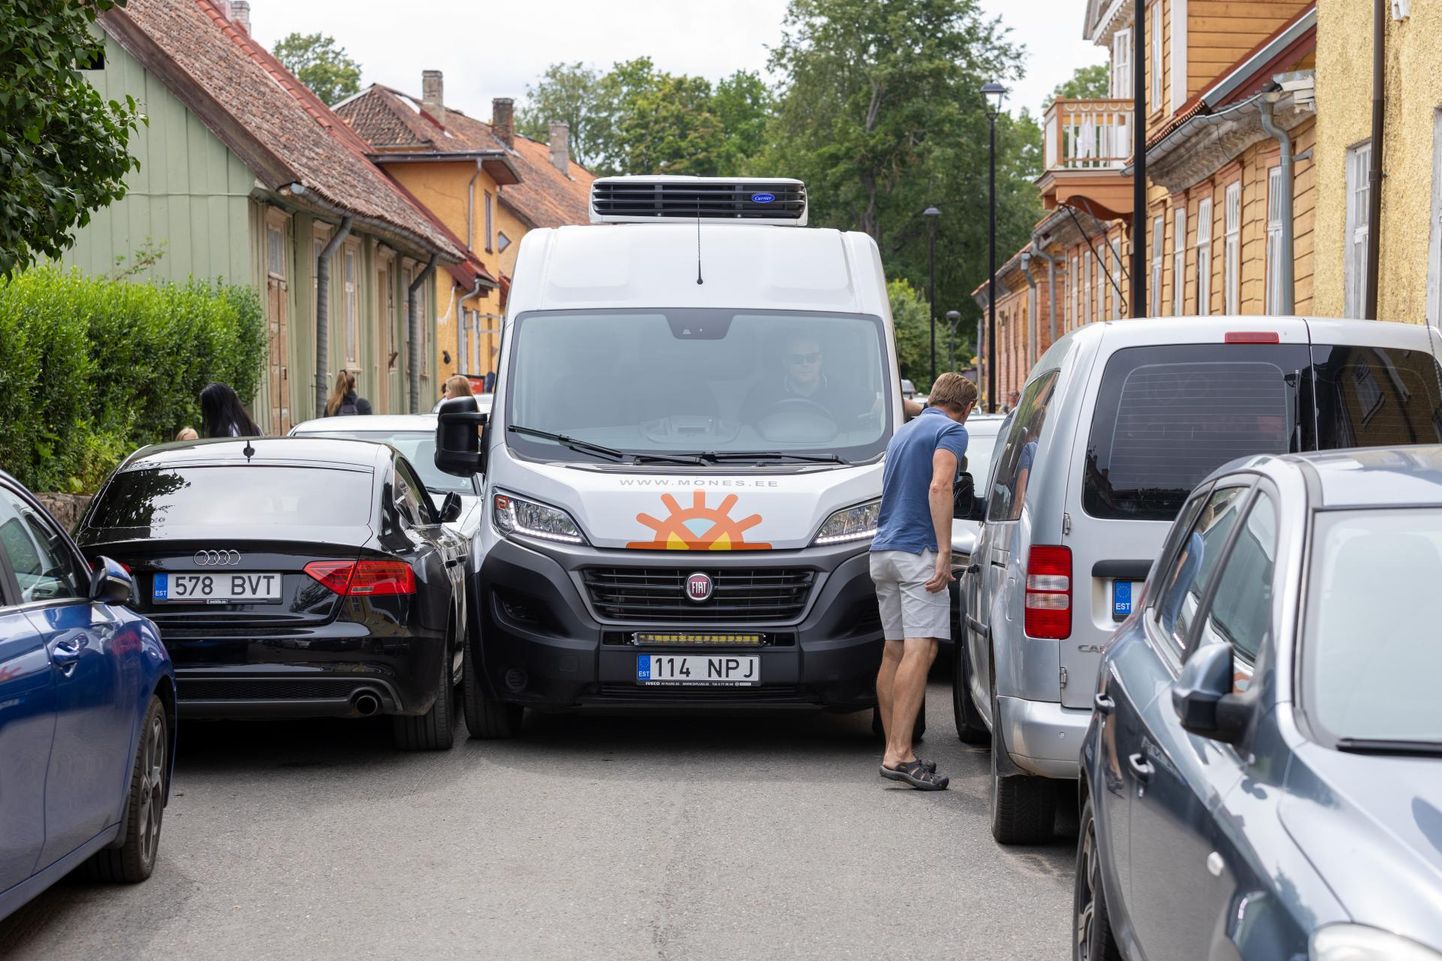 Pühapäeva pärastlõunal polnud Viljandis Lossi tänaval võimalik suuremat sorti sõidukiga liikuda, sest mõlemad teepooled olid tihedalt autosid täis.